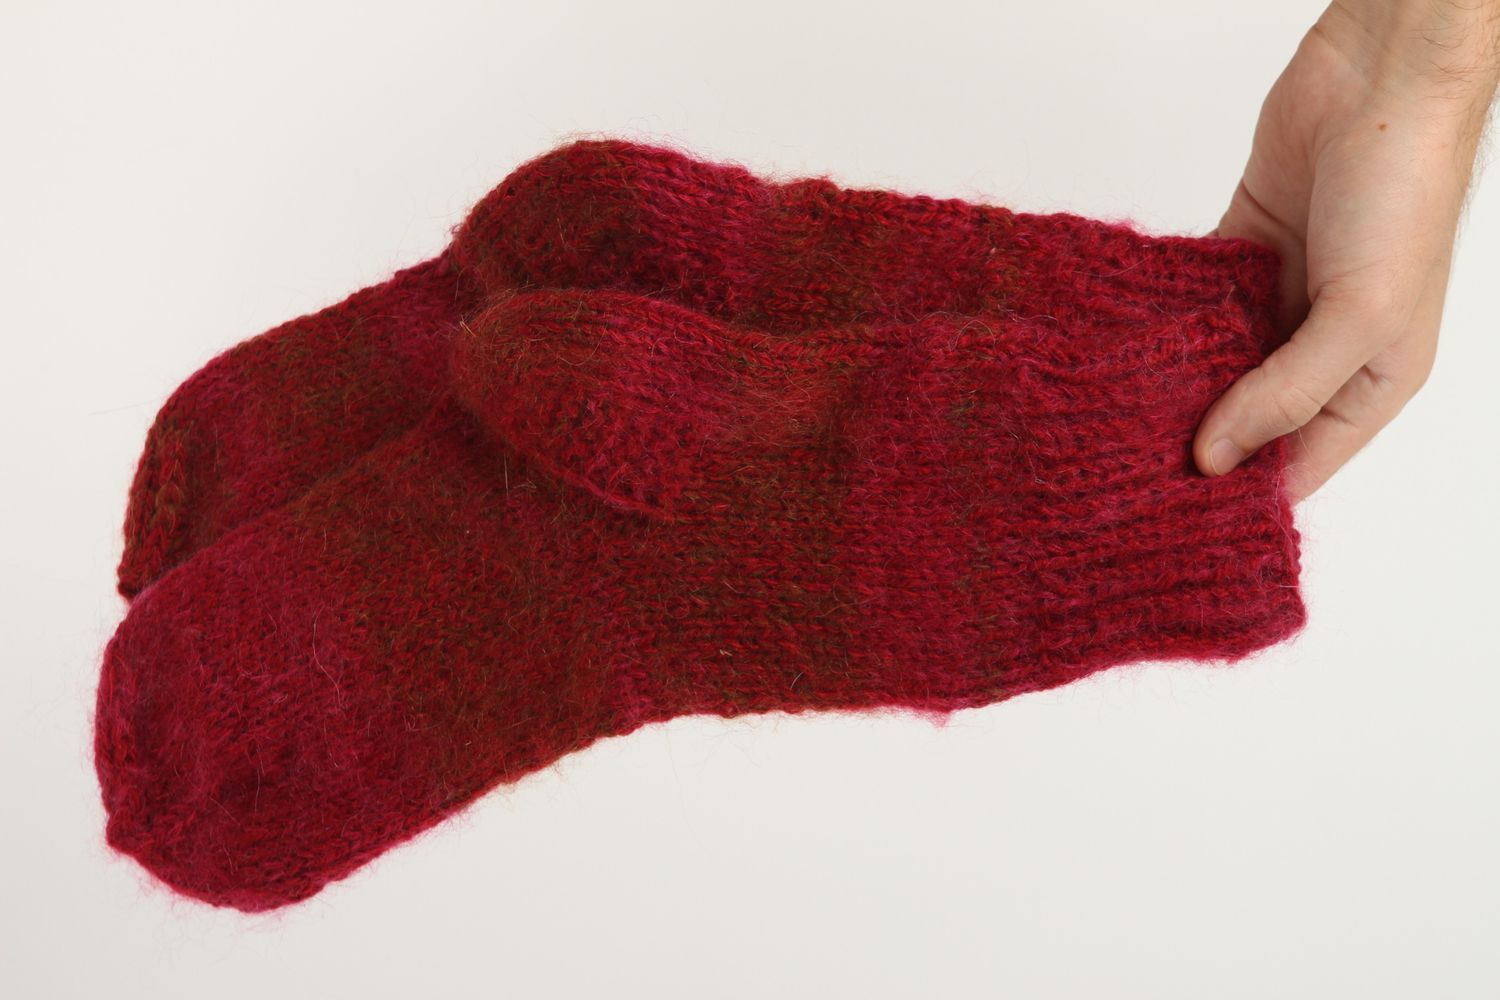 Homemade knitted woolen socks warm winter socks best wool socks gifts for women photo 5